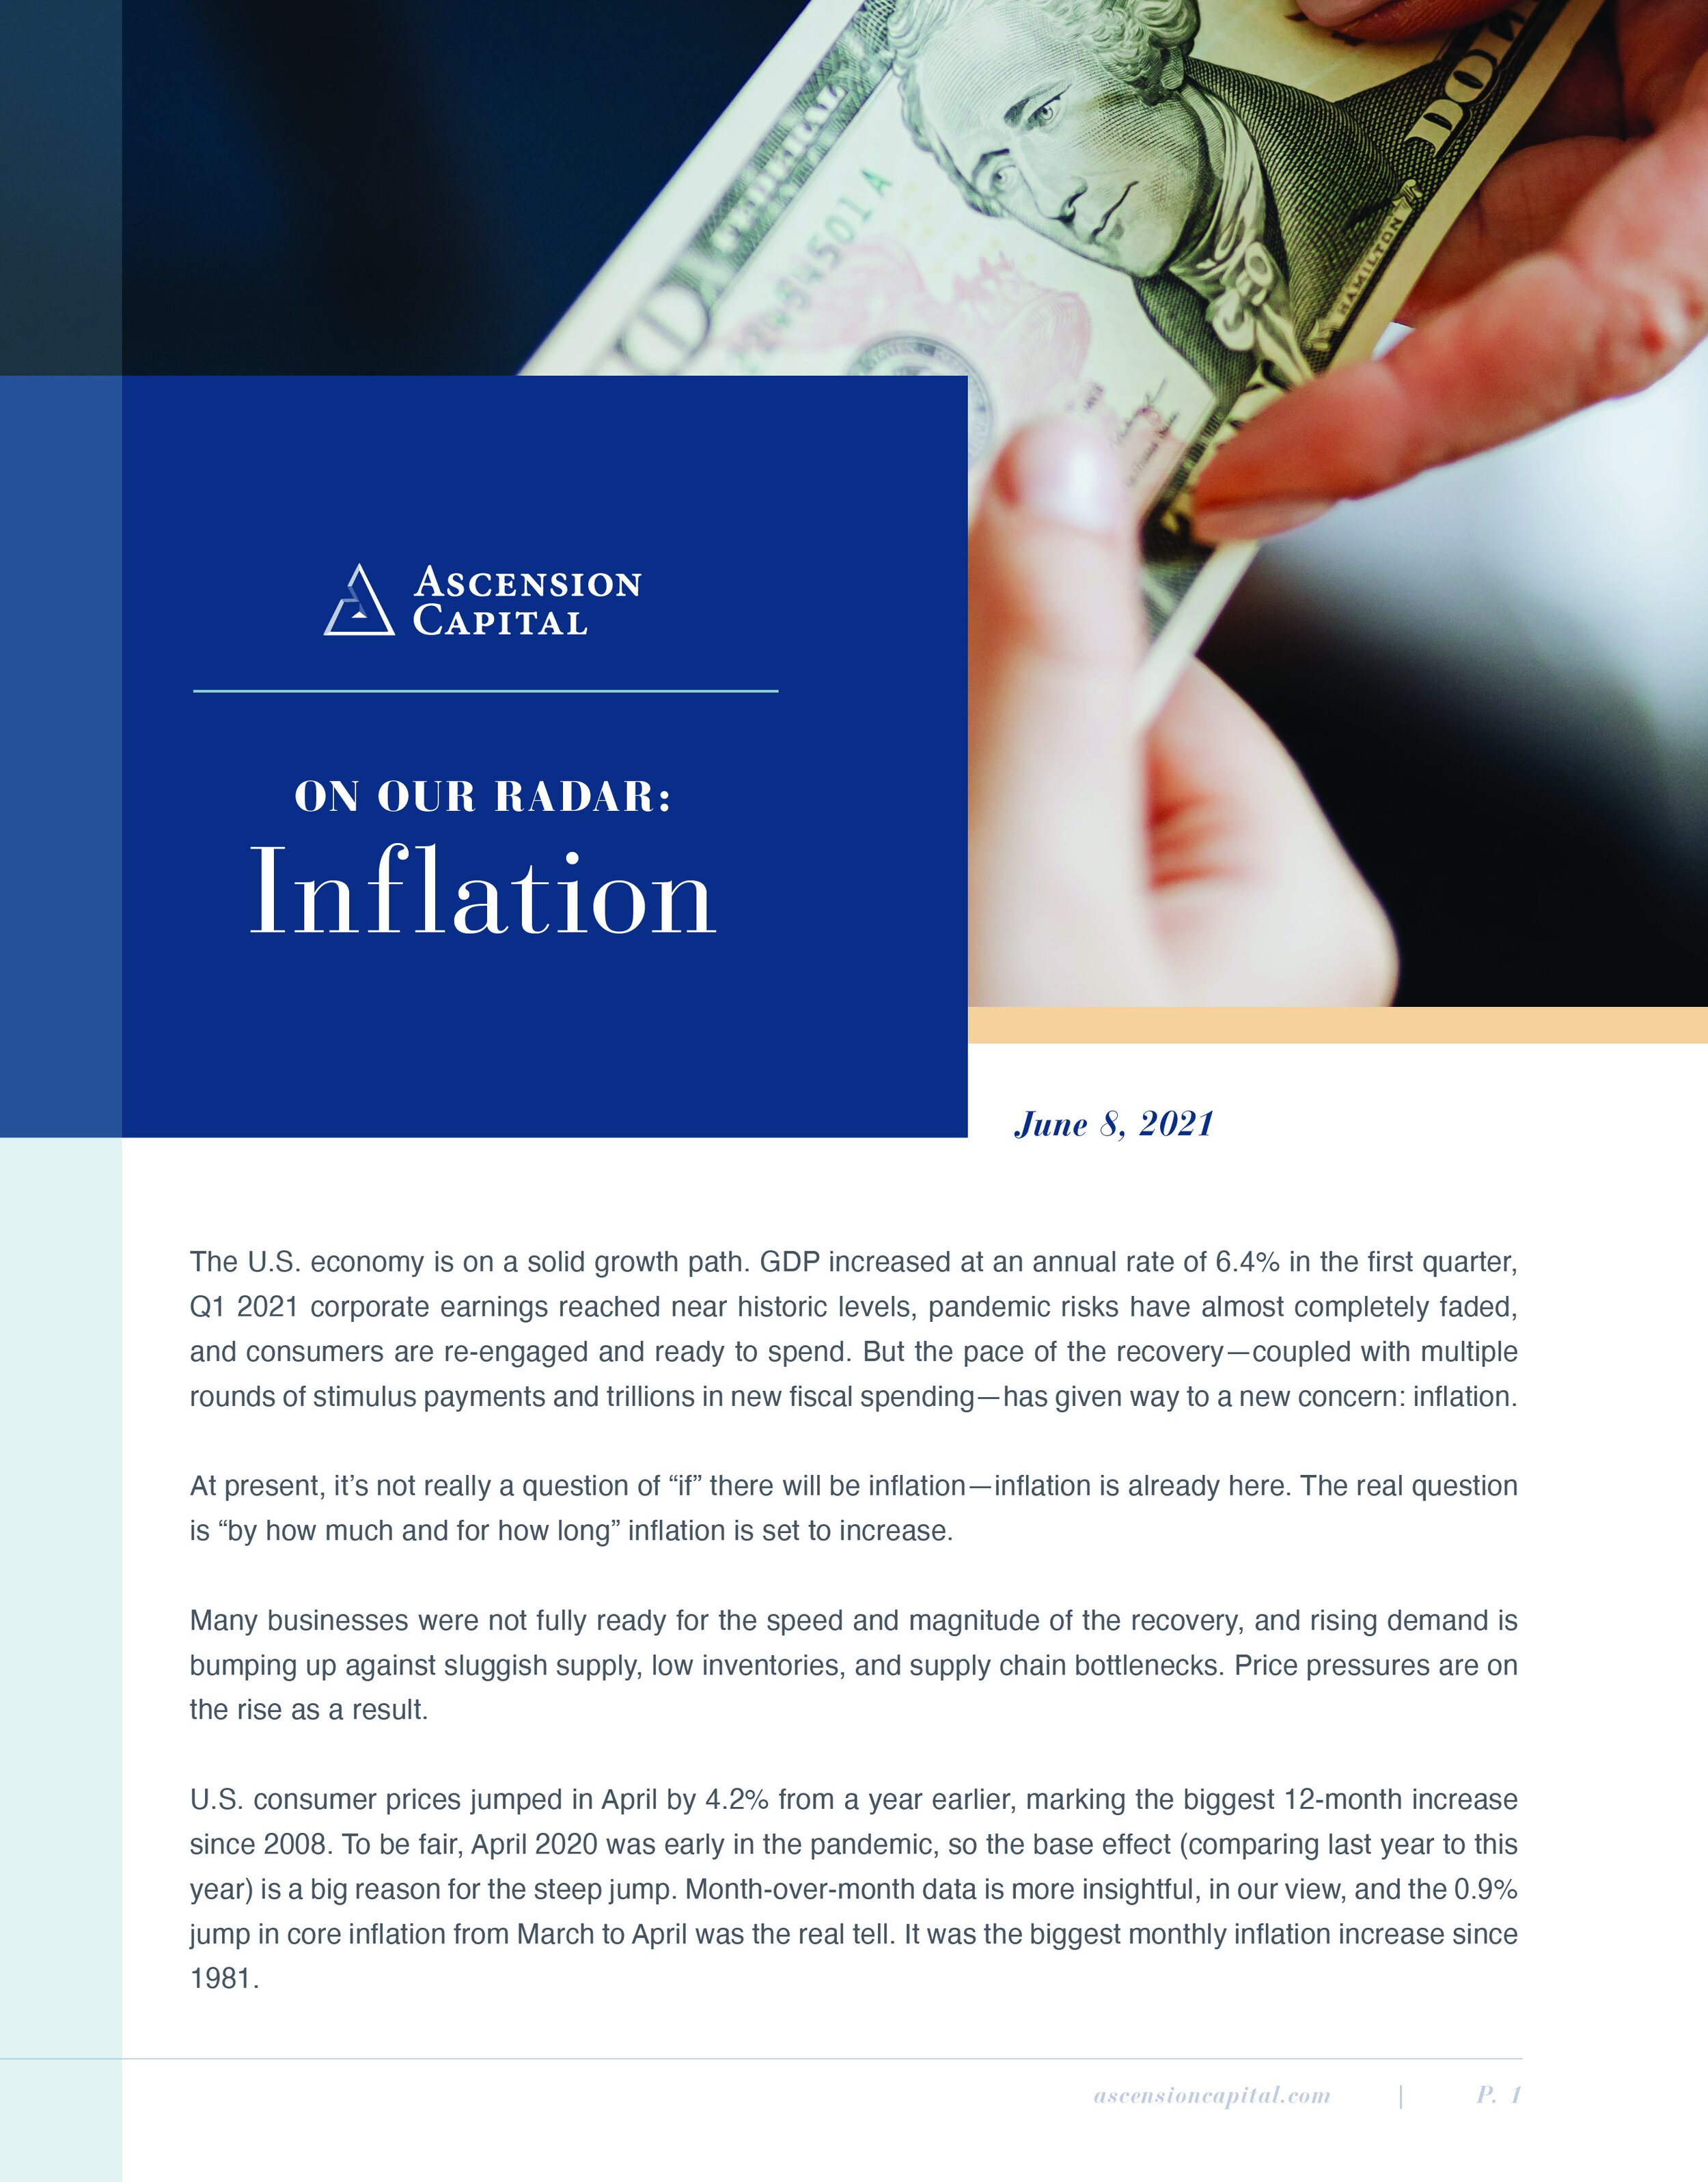 AscensionCapital_Inflation.jpg